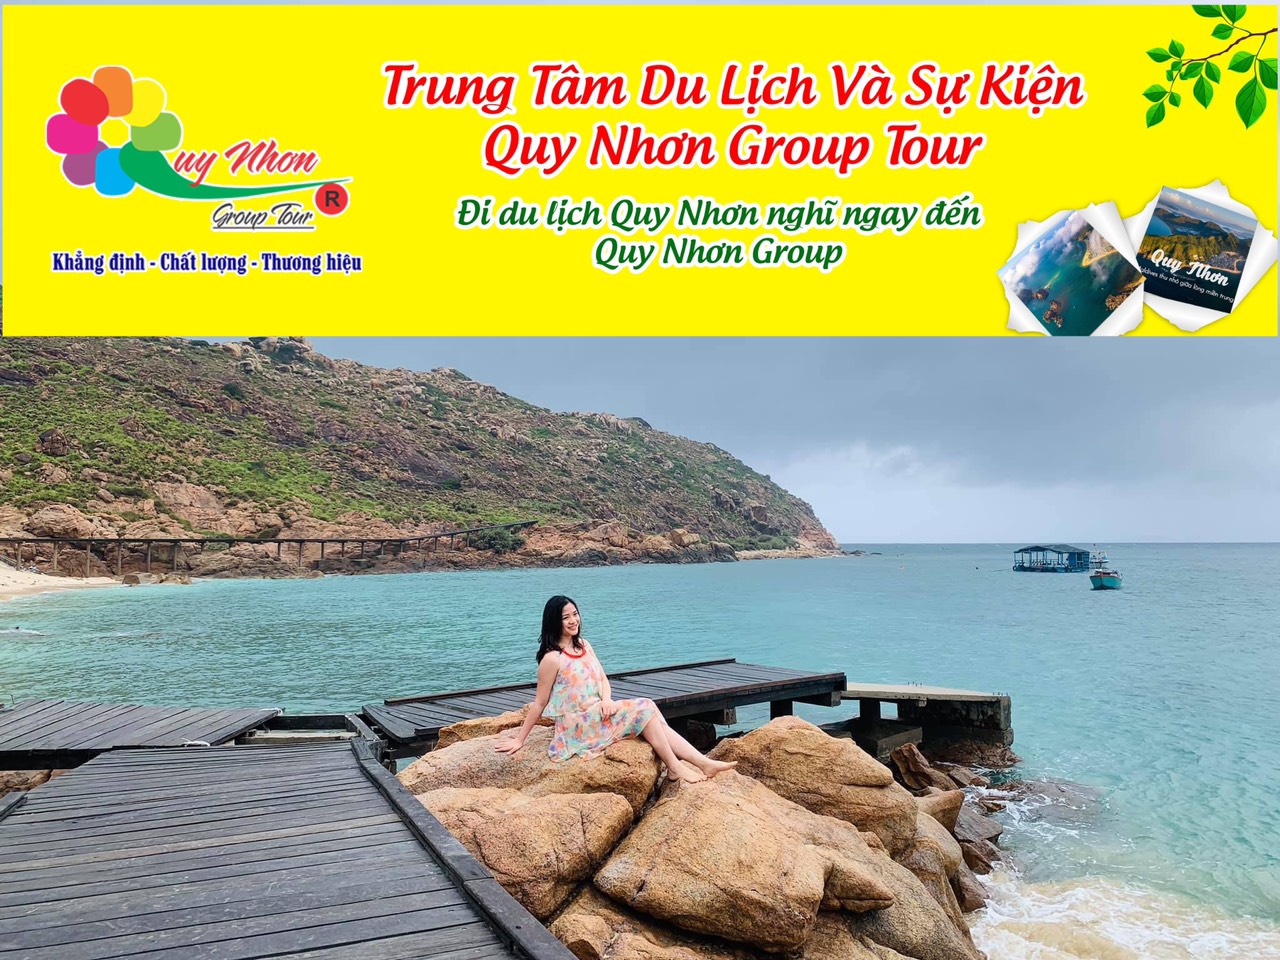 HÒN KHÔ TOUR – KỲ CO 1 NGÀY (0944.107.174) : Tour Cam Kết Khởi Hành Hằng Ngày Dù Chỉ 1 Khách